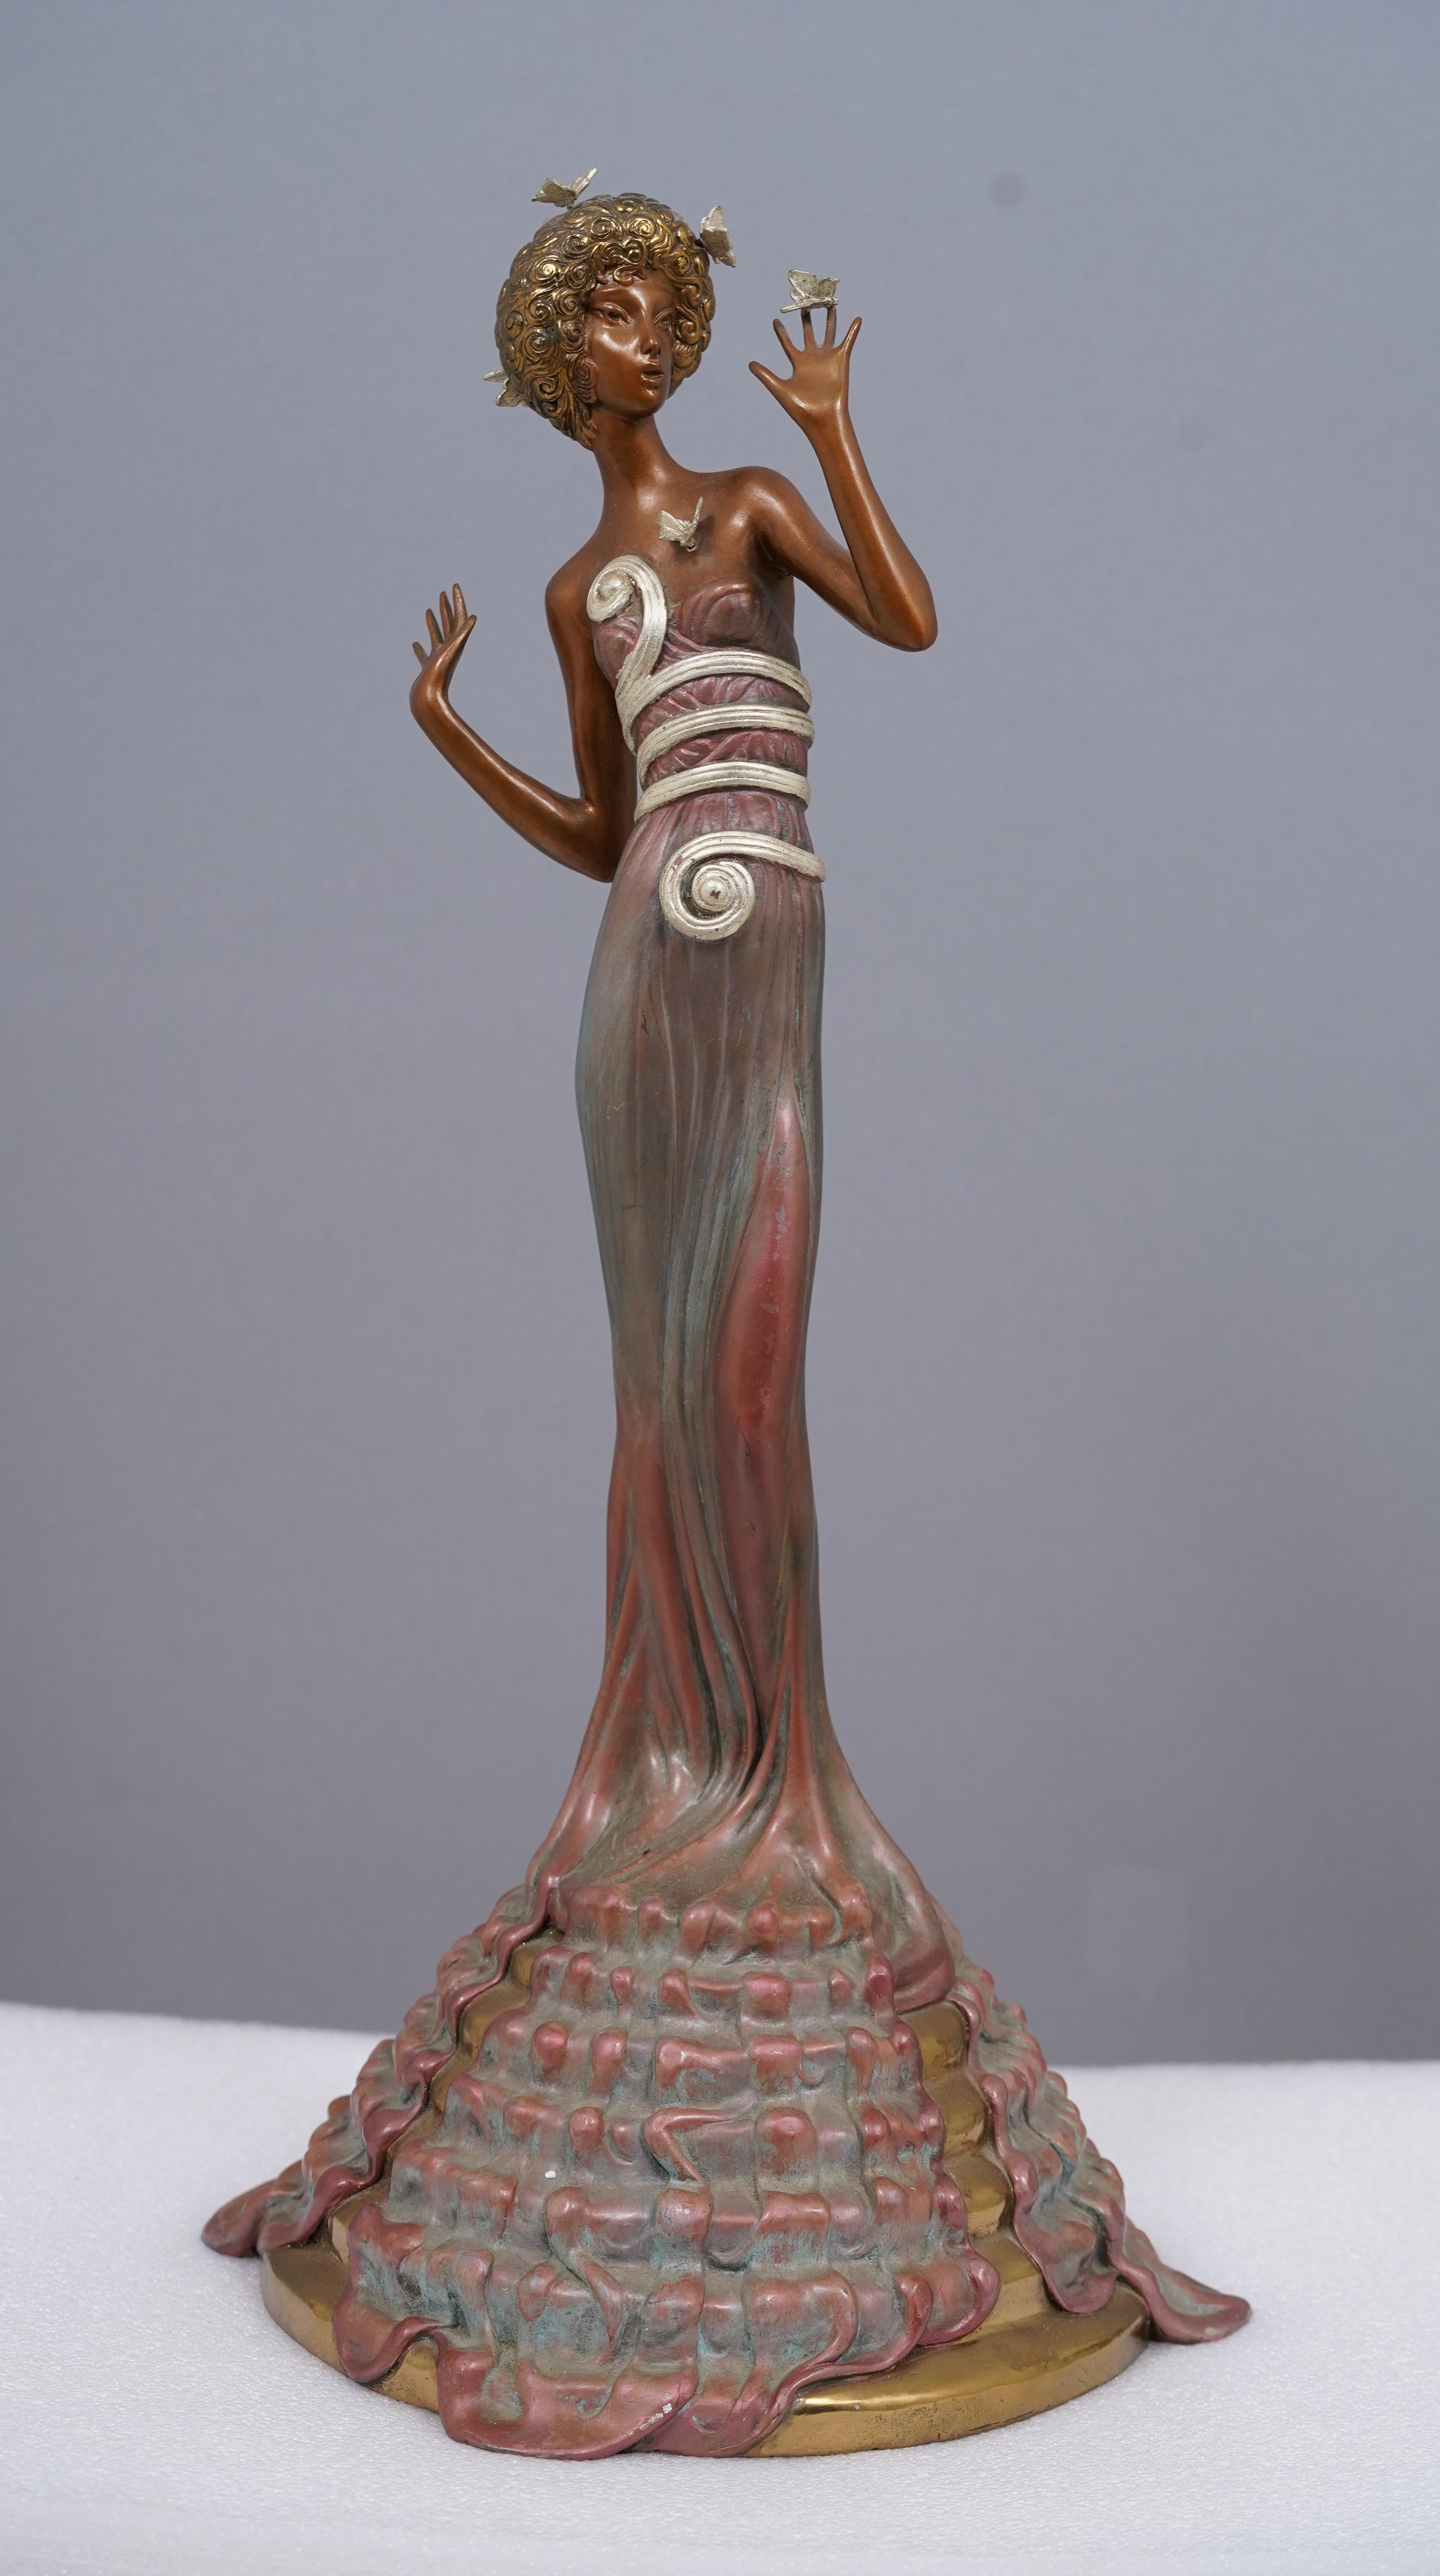 Nude Sculpture Erte (Romain de Tirtoff) - Portrait de femme en bronze original signé Art déco, édition limitée